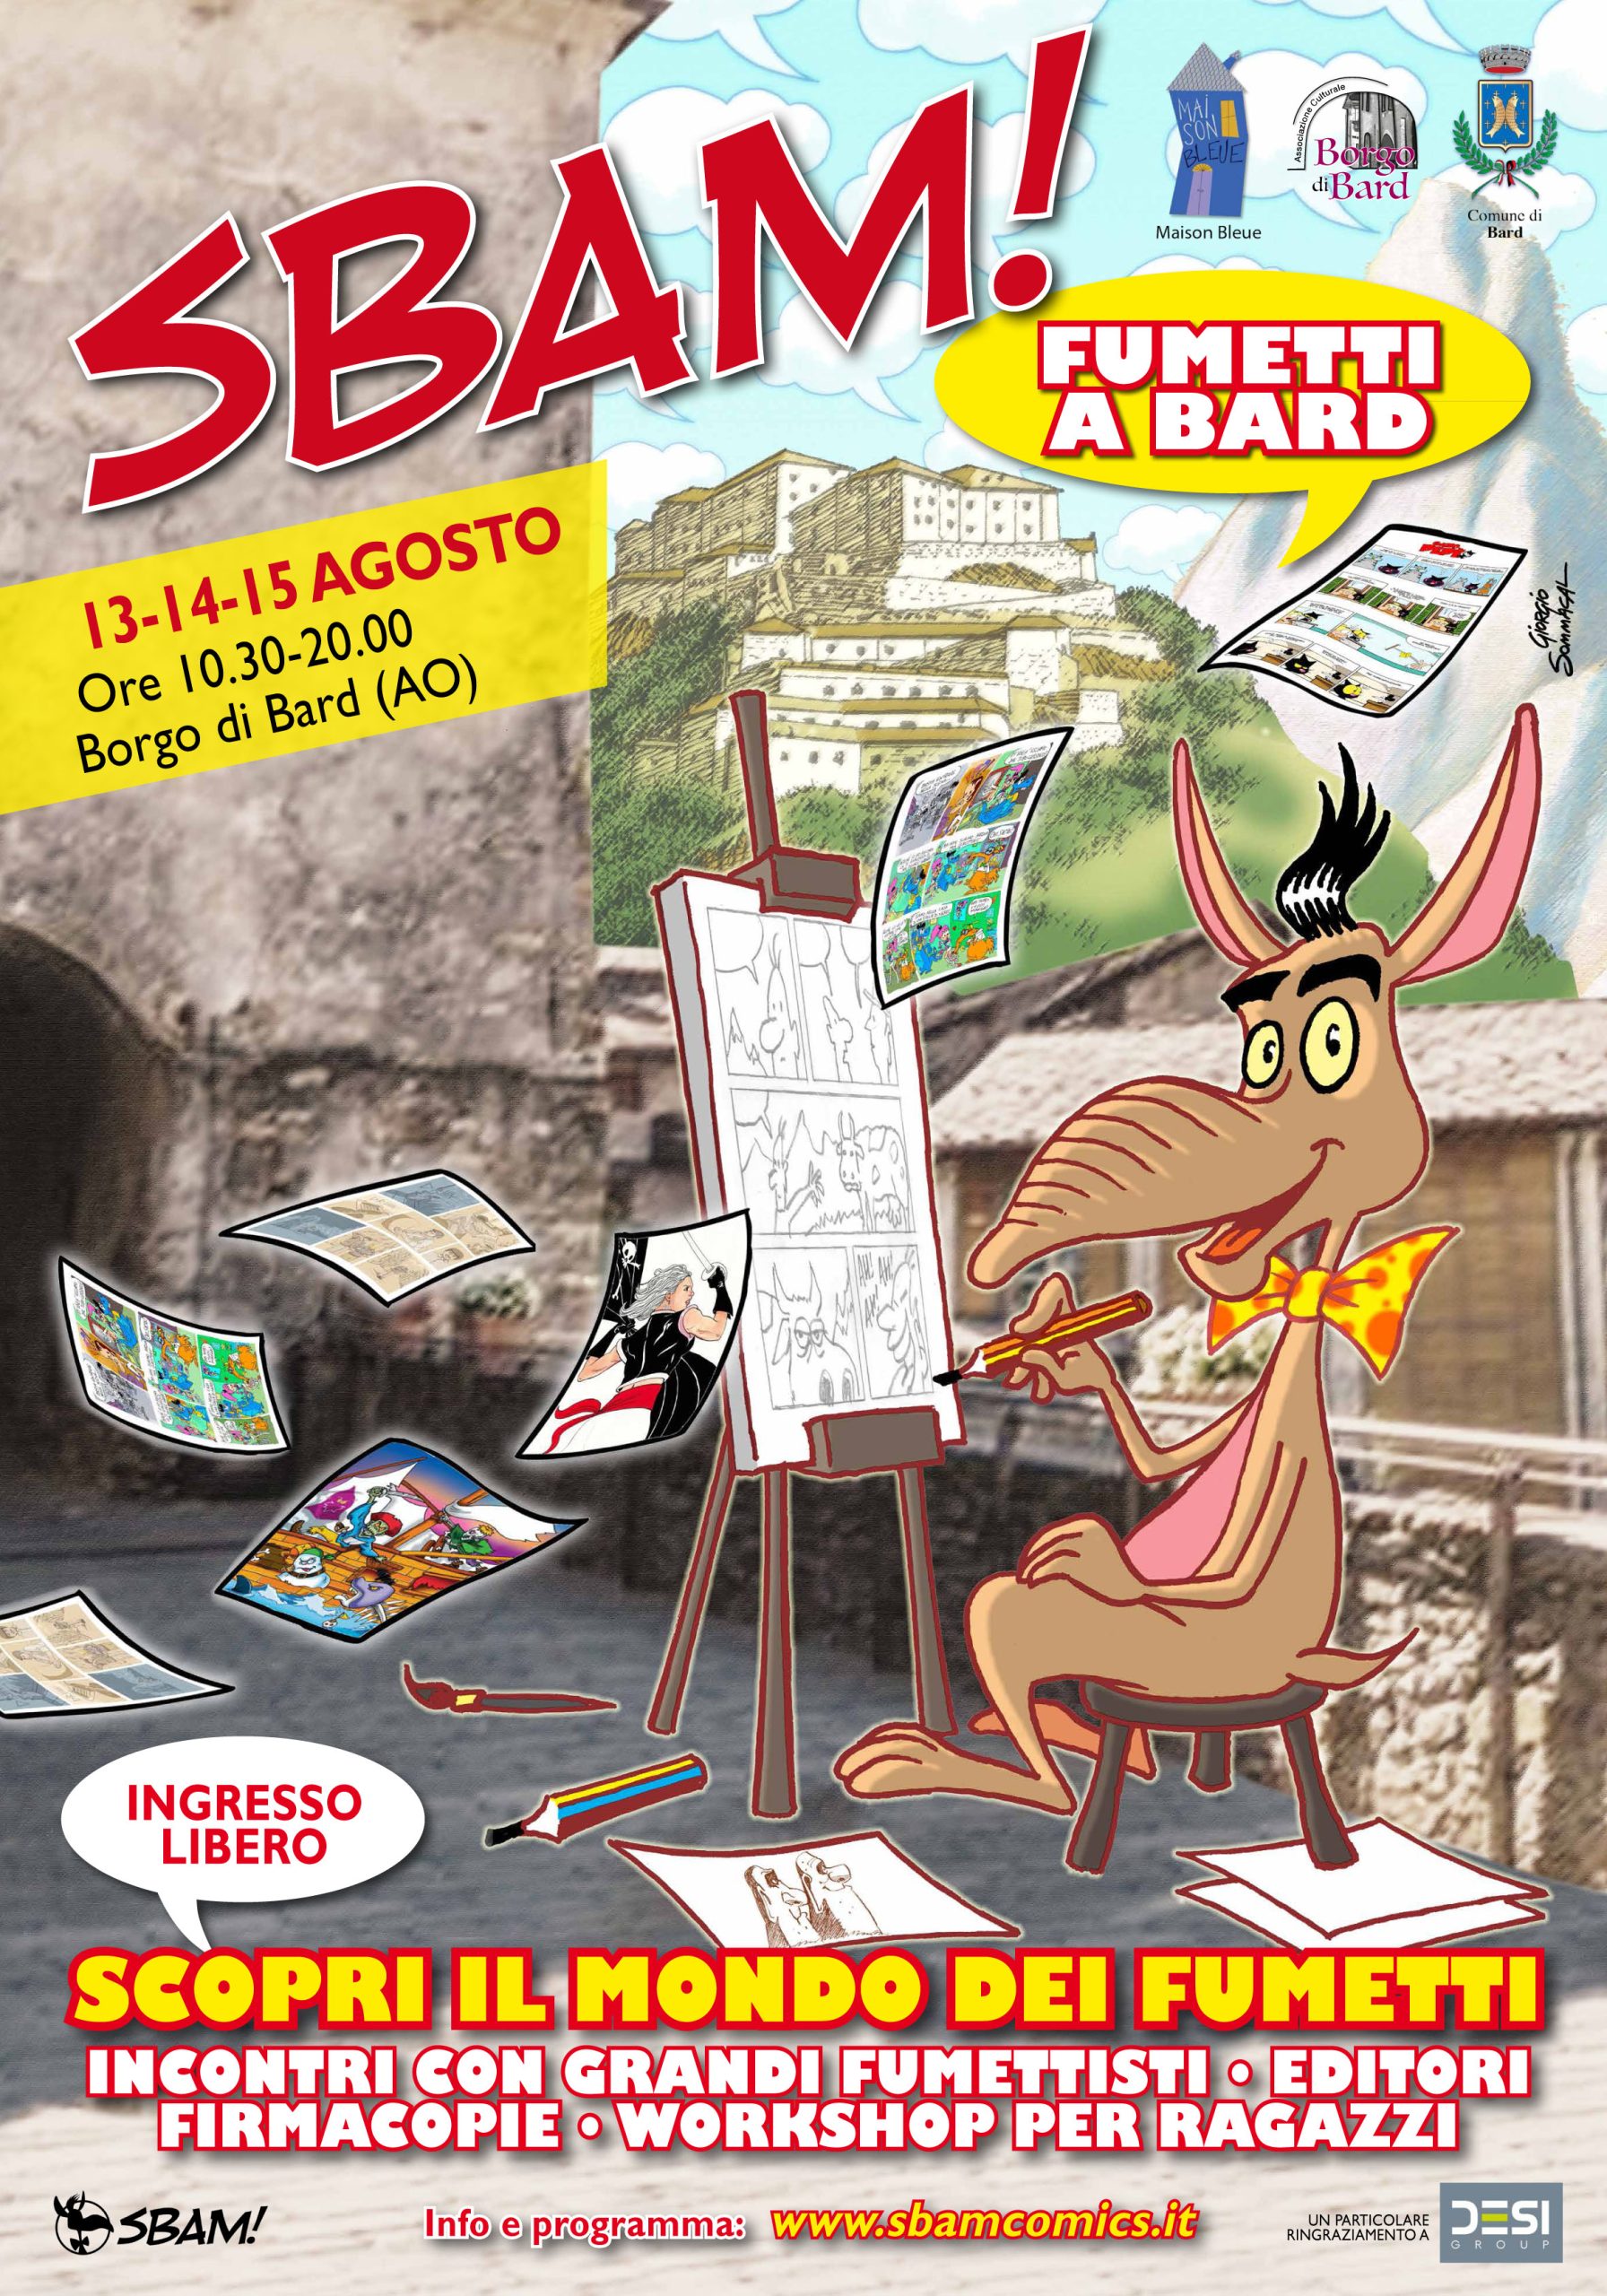 Sbam! Fumetti a Bard dal 13 al 15 agosto 2022